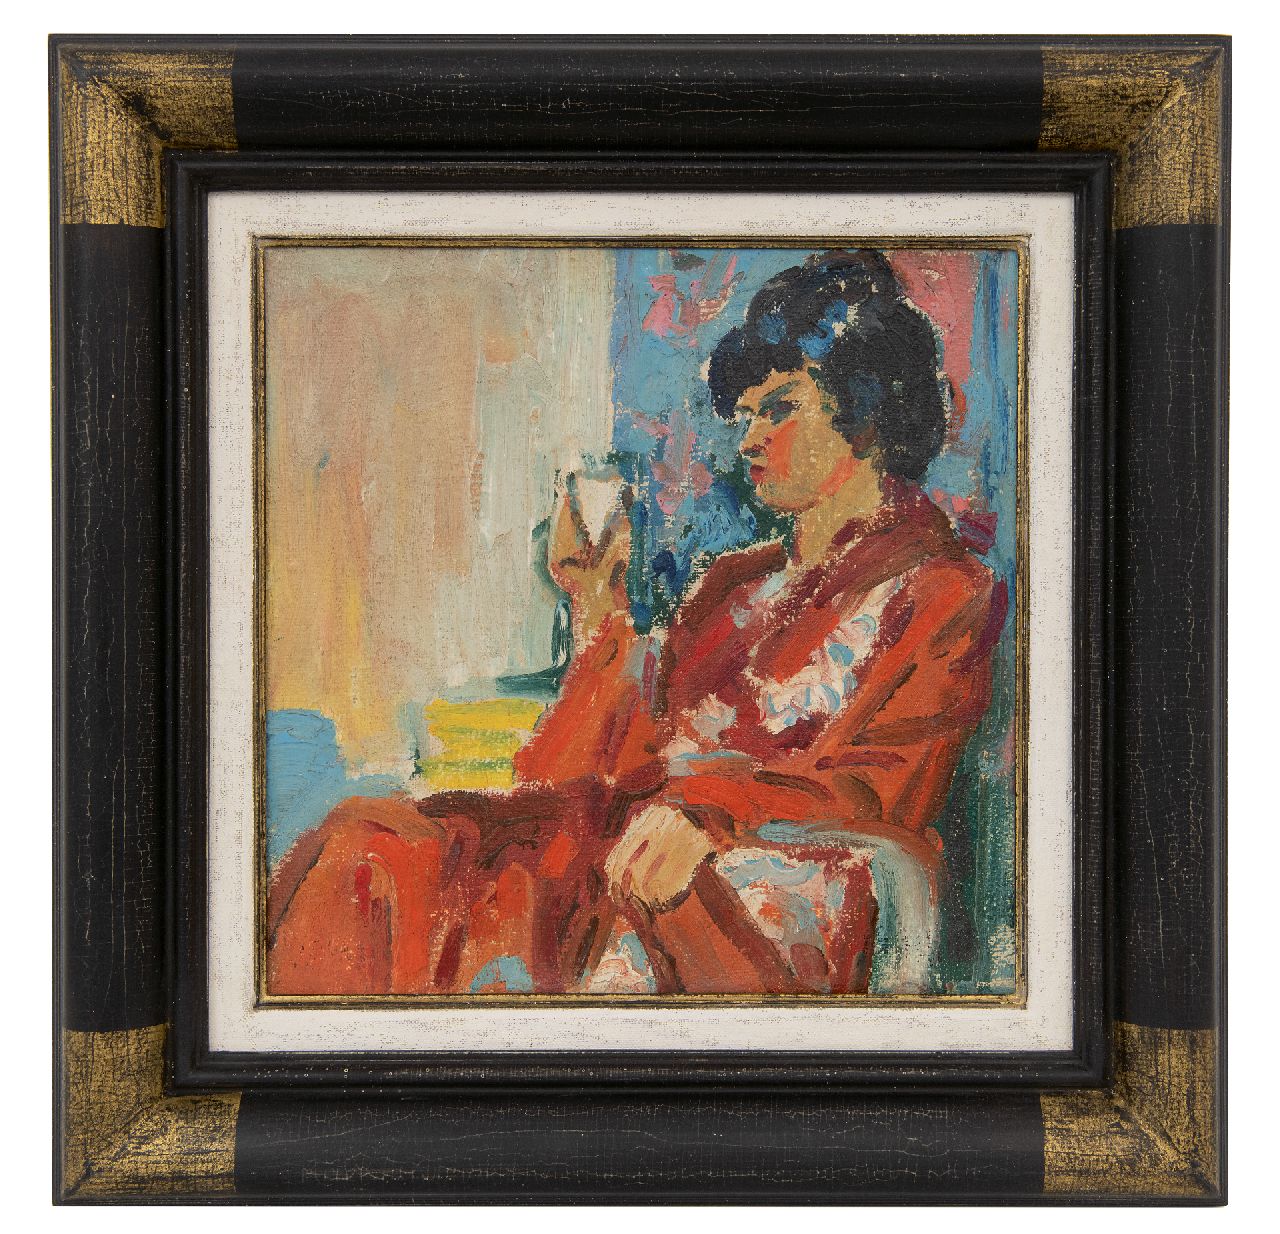 Dijkstra J.  | Johannes 'Johan' Dijkstra | Schilderijen te koop aangeboden | Modieuze vrouw in stoel, wasverf op doek 25,2 x 25,2 cm, eind jaren '20